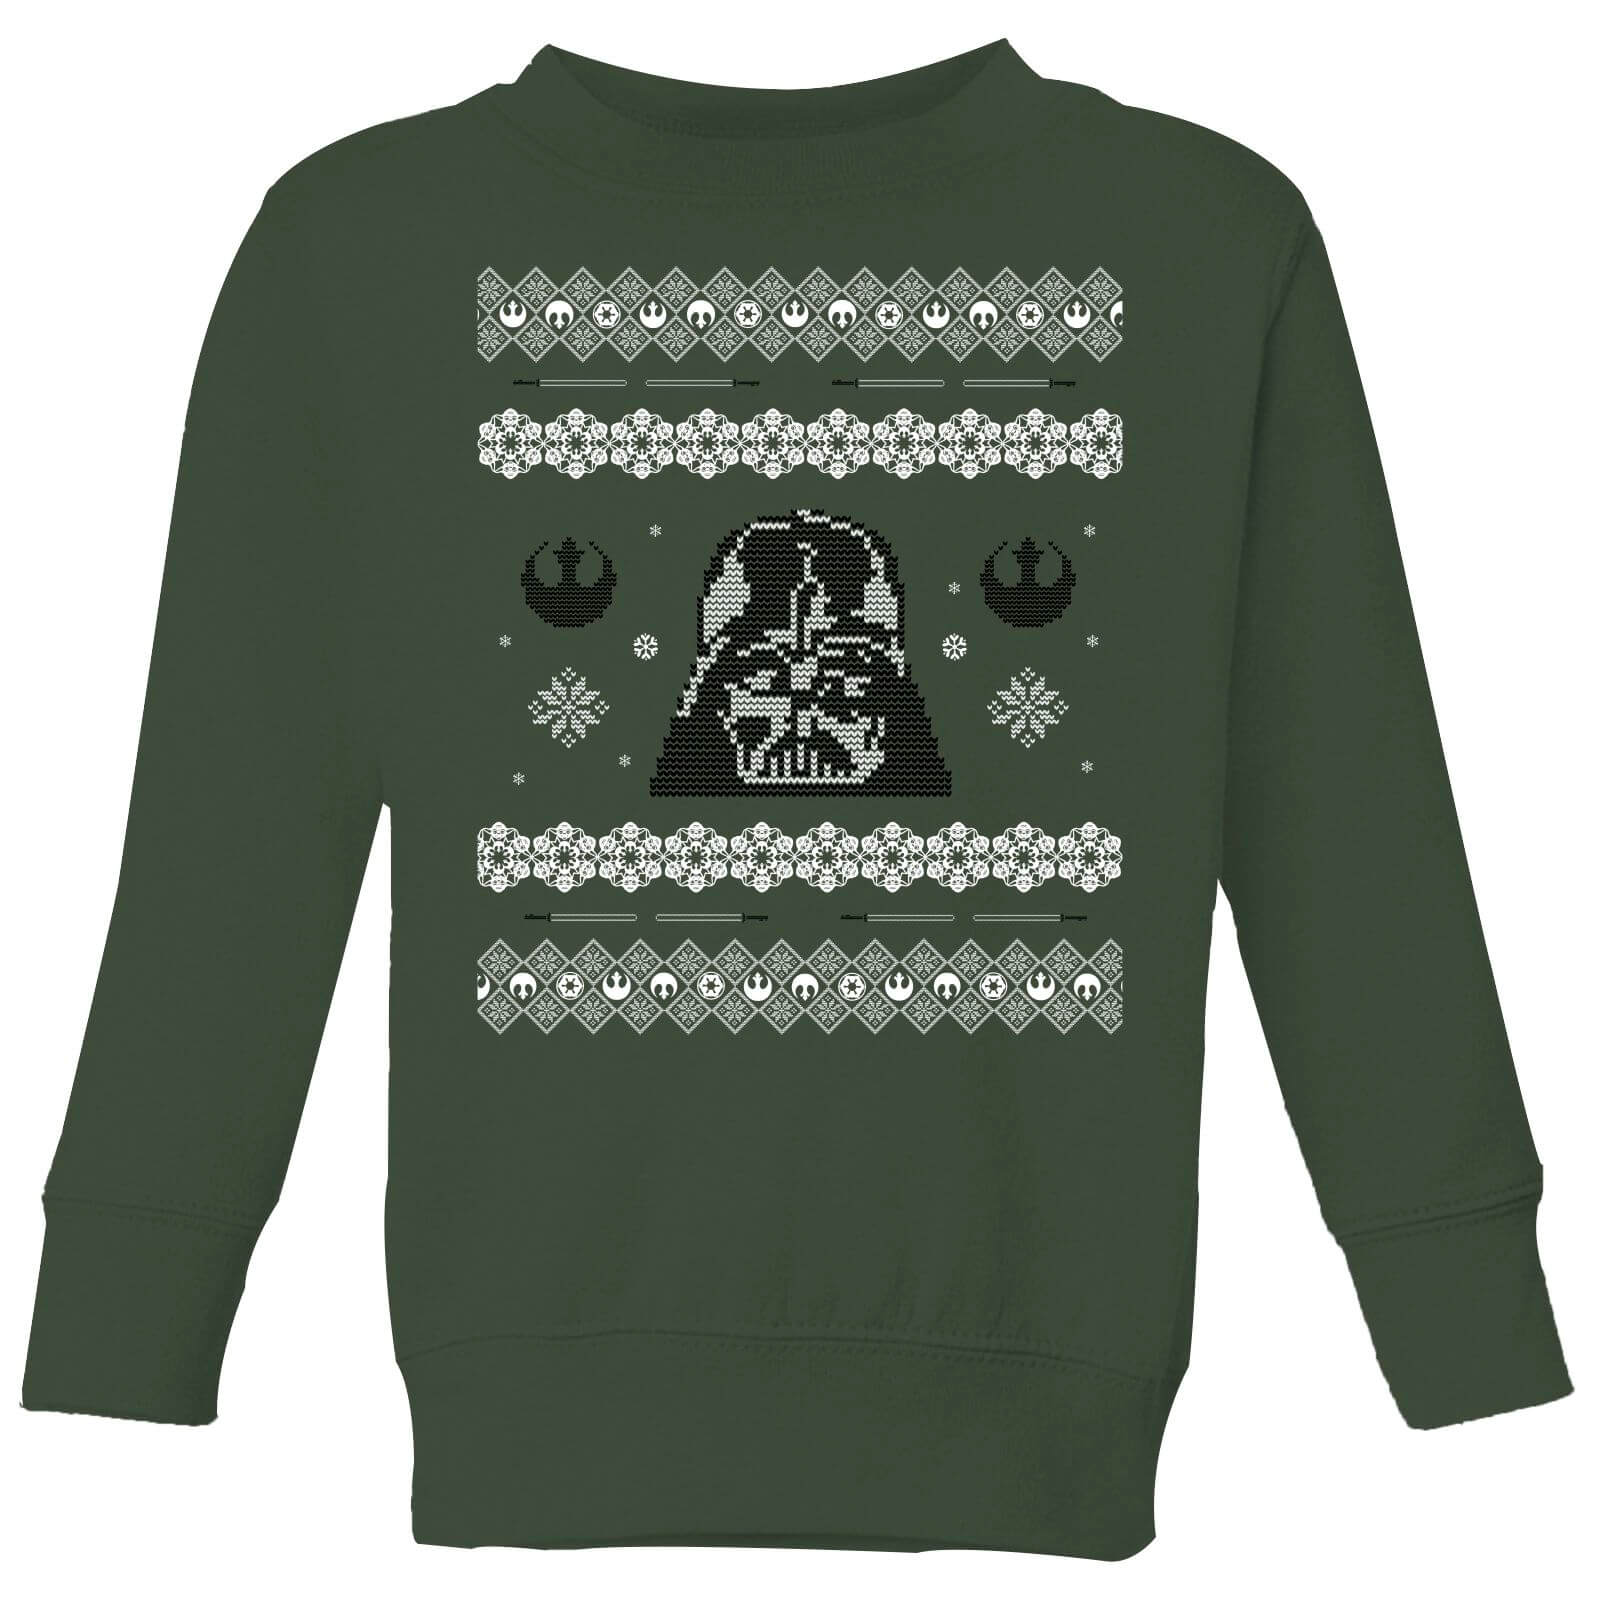 Star Wars Darth Vader Knit Kinder Weihnachtspullover – Grün - 5-6 Jahre